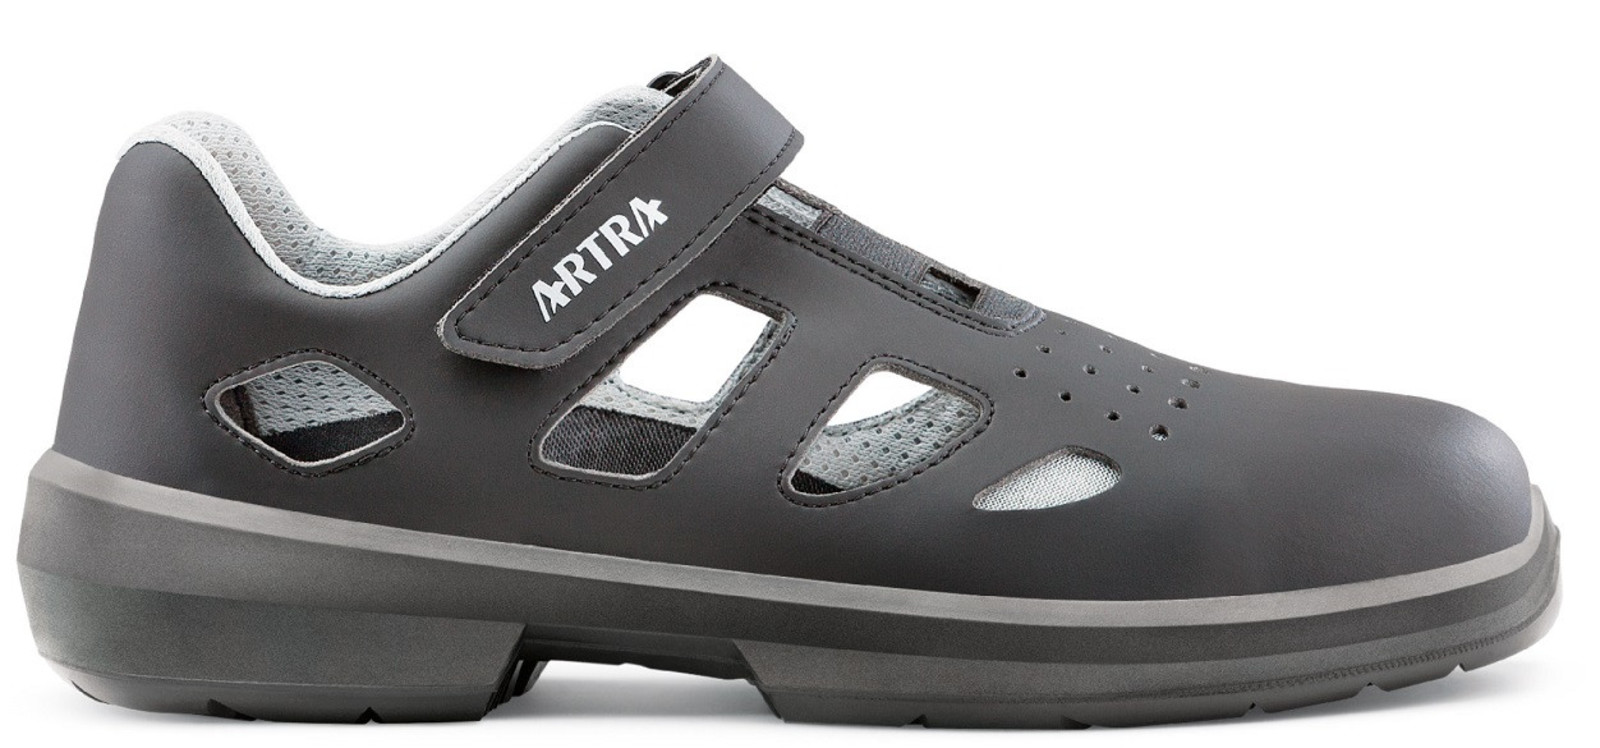 Bezpečnostné sandále Artra Ario 801 661460 S1P - veľkosť: 40, farba: čierna